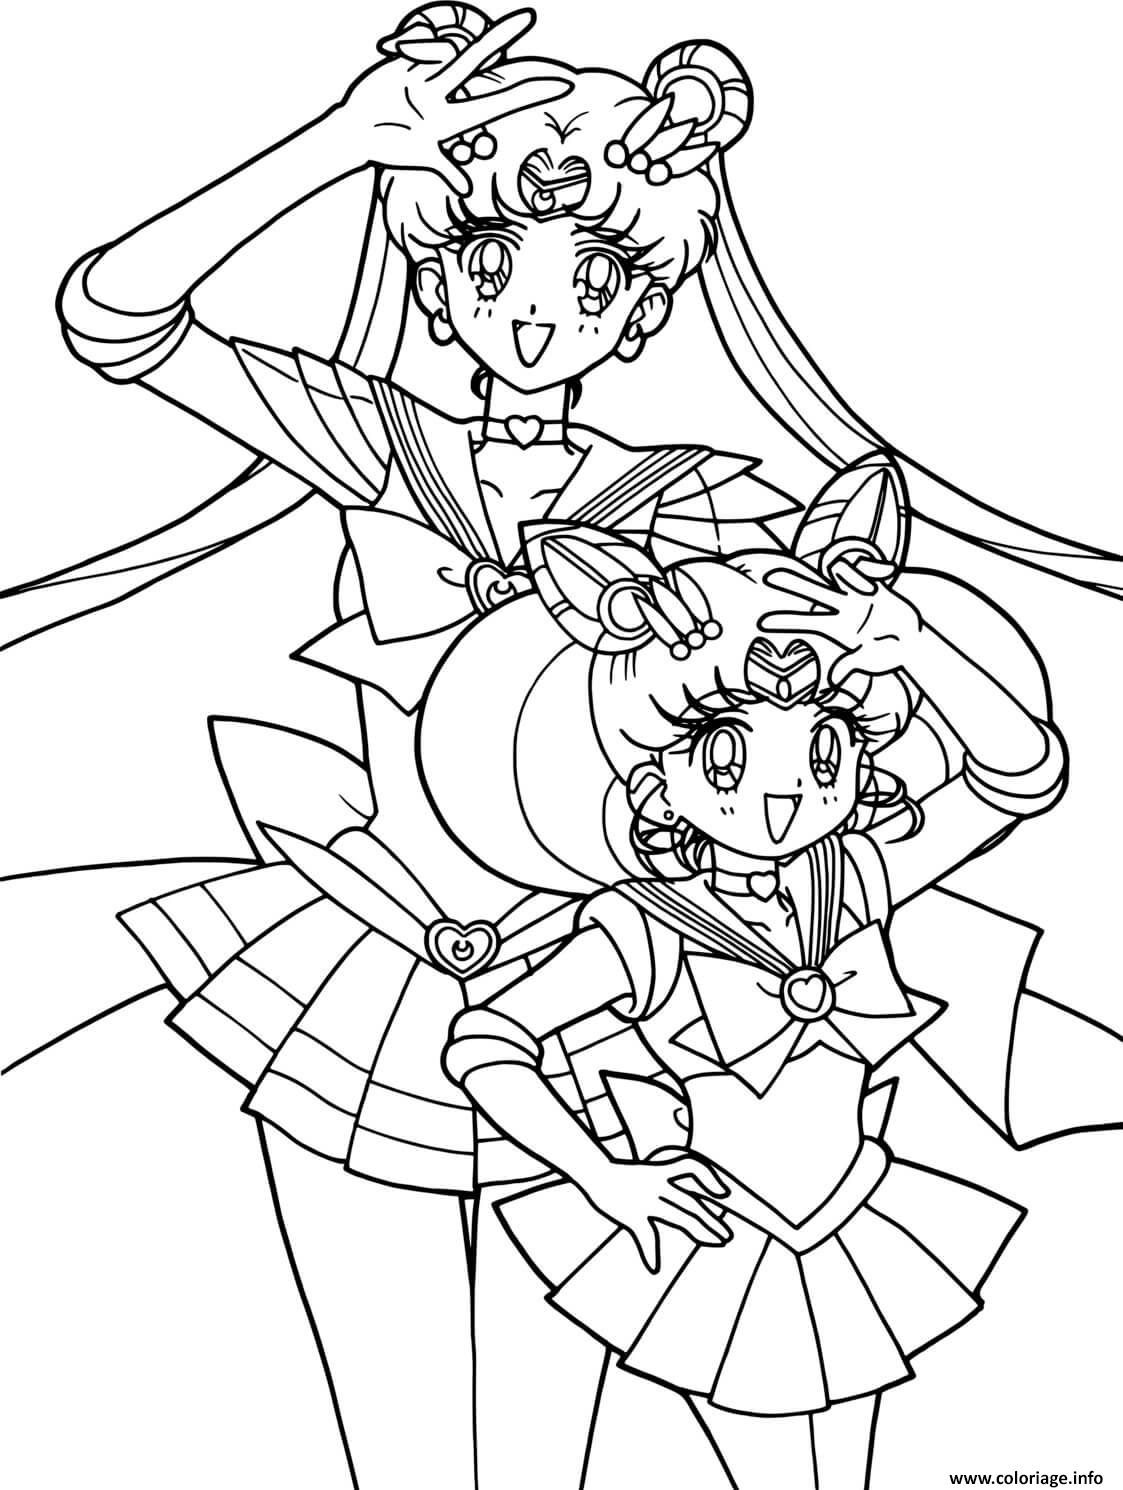 Dessin Sailor Moon Adventure Coloriage Gratuit à Imprimer